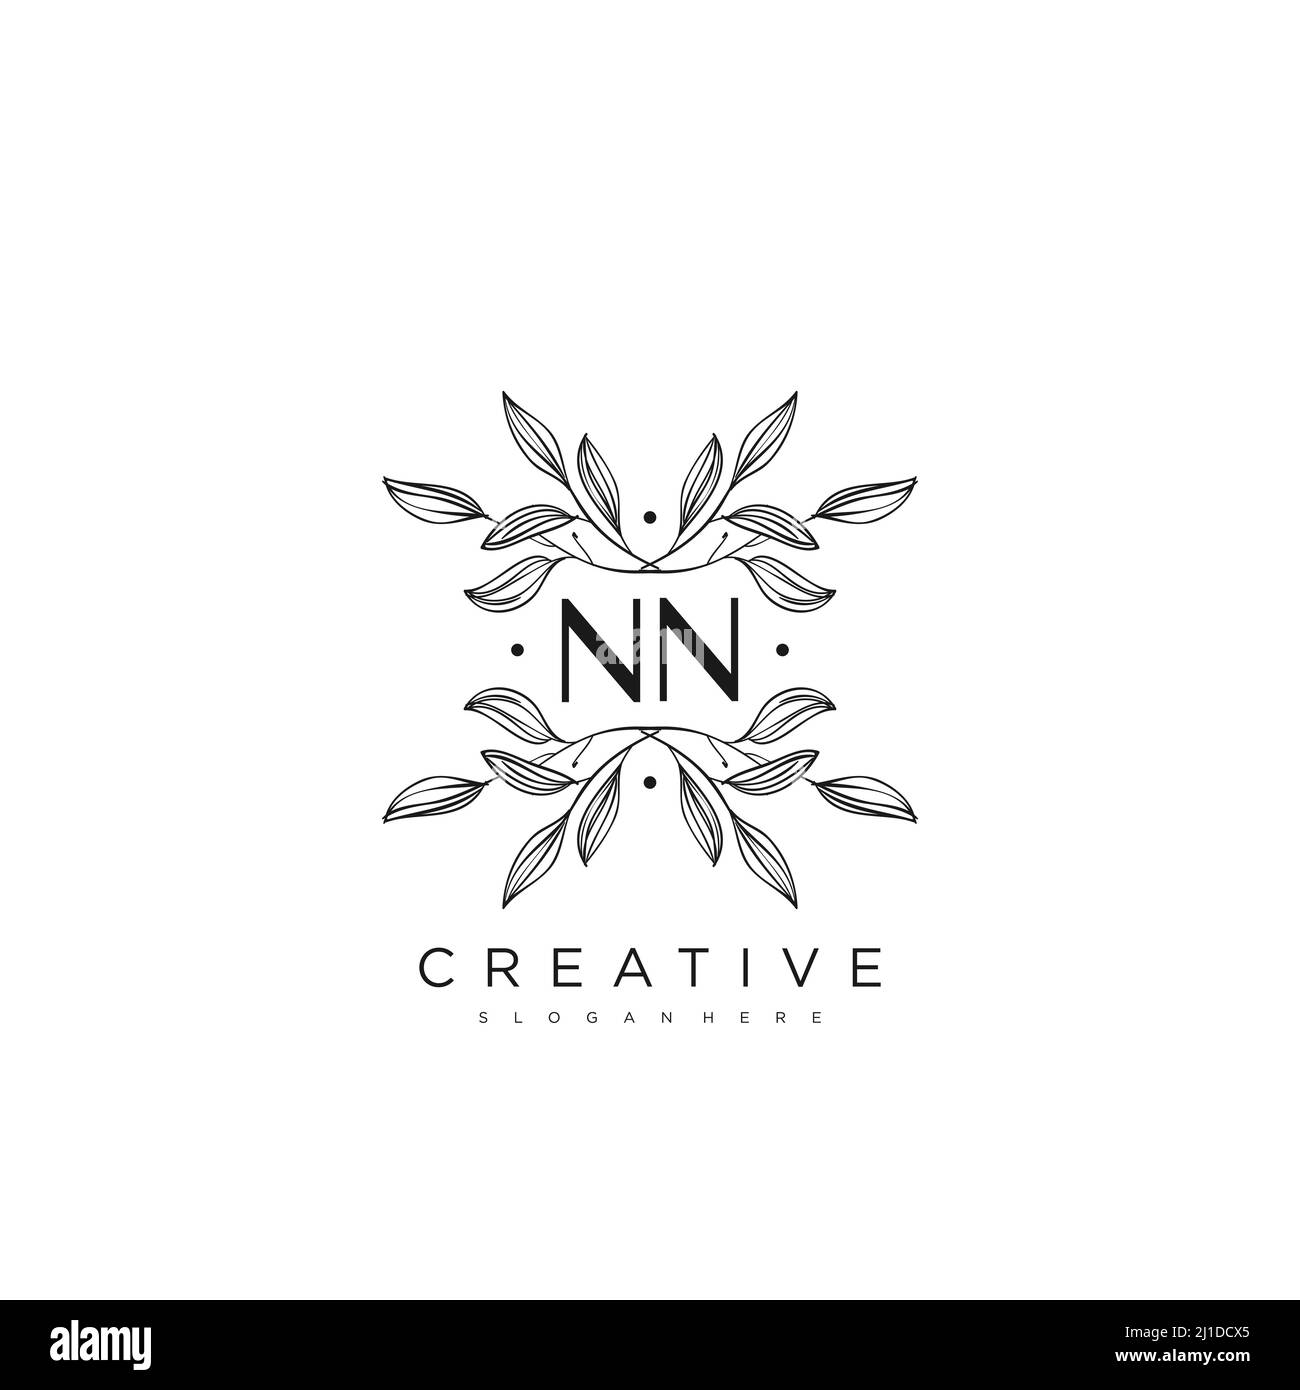 NN lettre initiale Flower logo Template Vector Premium Vector Illustration de Vecteur